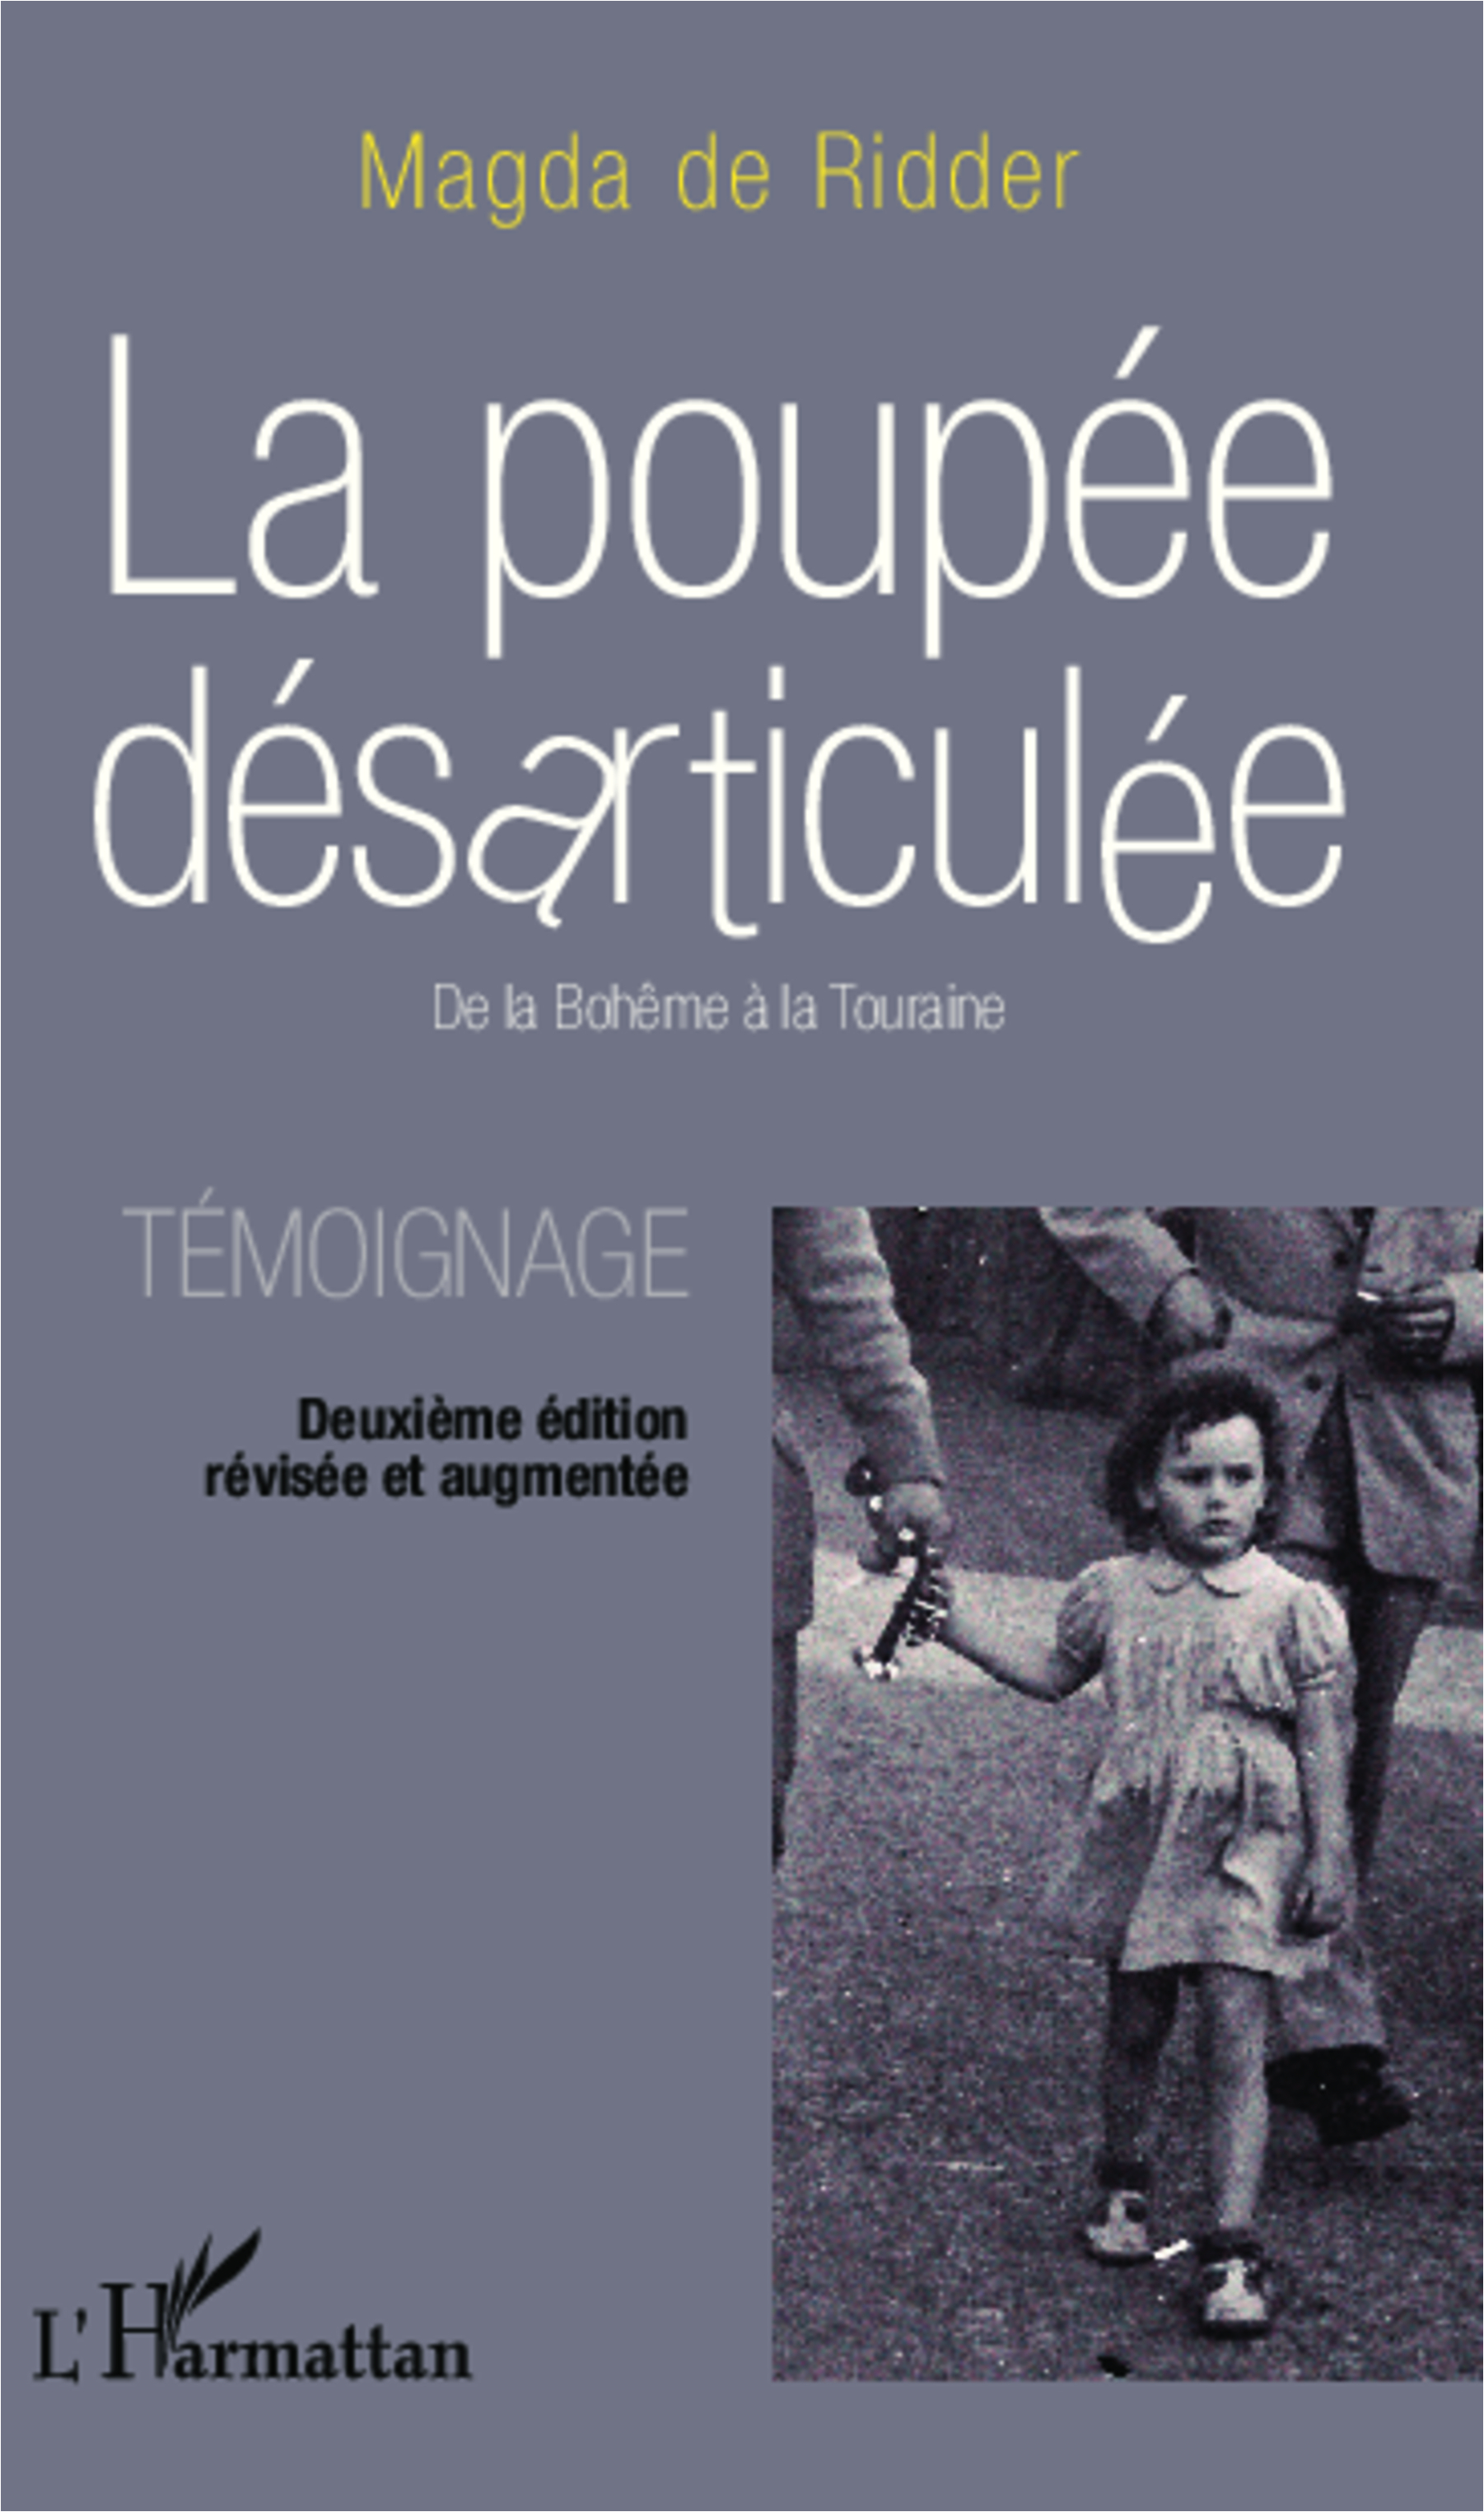 La poupée désarticulée, De la Bohême à la Touraine - Témoignage - Deuxième édition révisée et augmentée (9782343010144-front-cover)